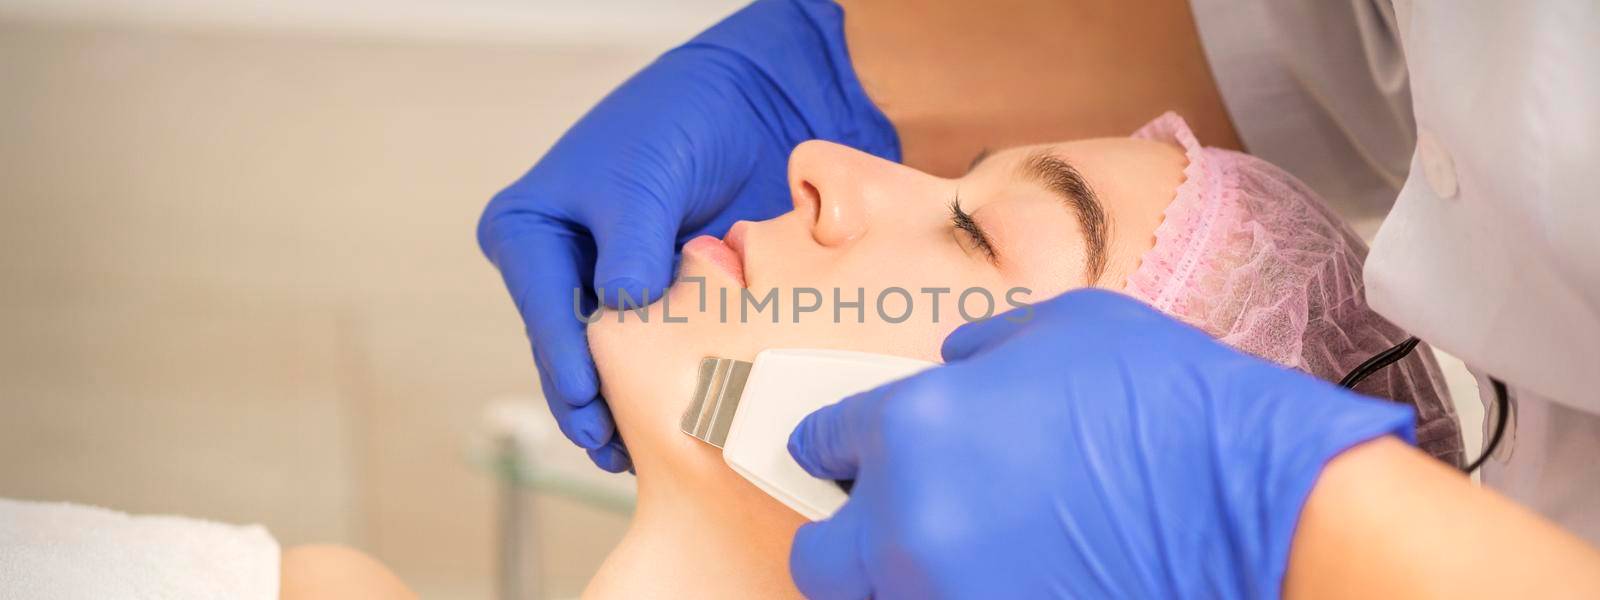 Beautiful young woman receiving ultrasonic cavitation facial cleansing in beauty spa salon